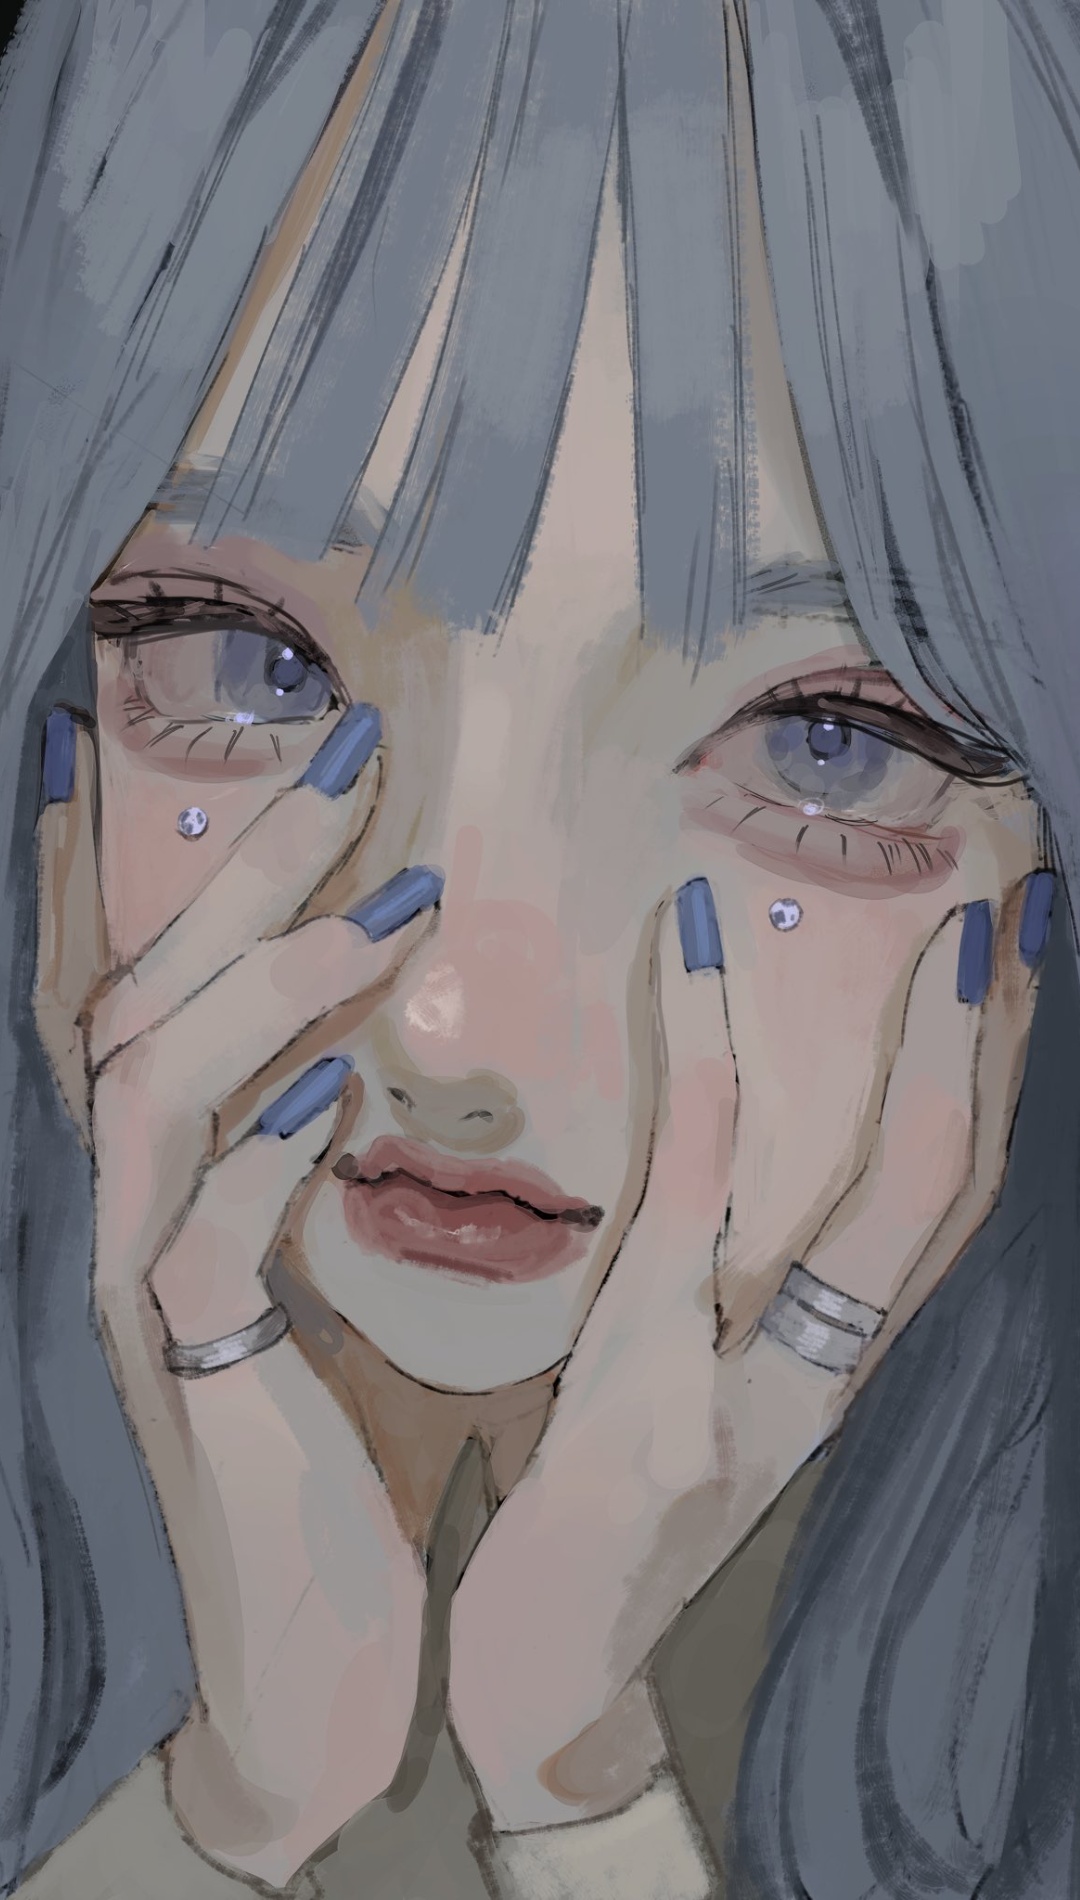 Sad Crying Anime Girl Images